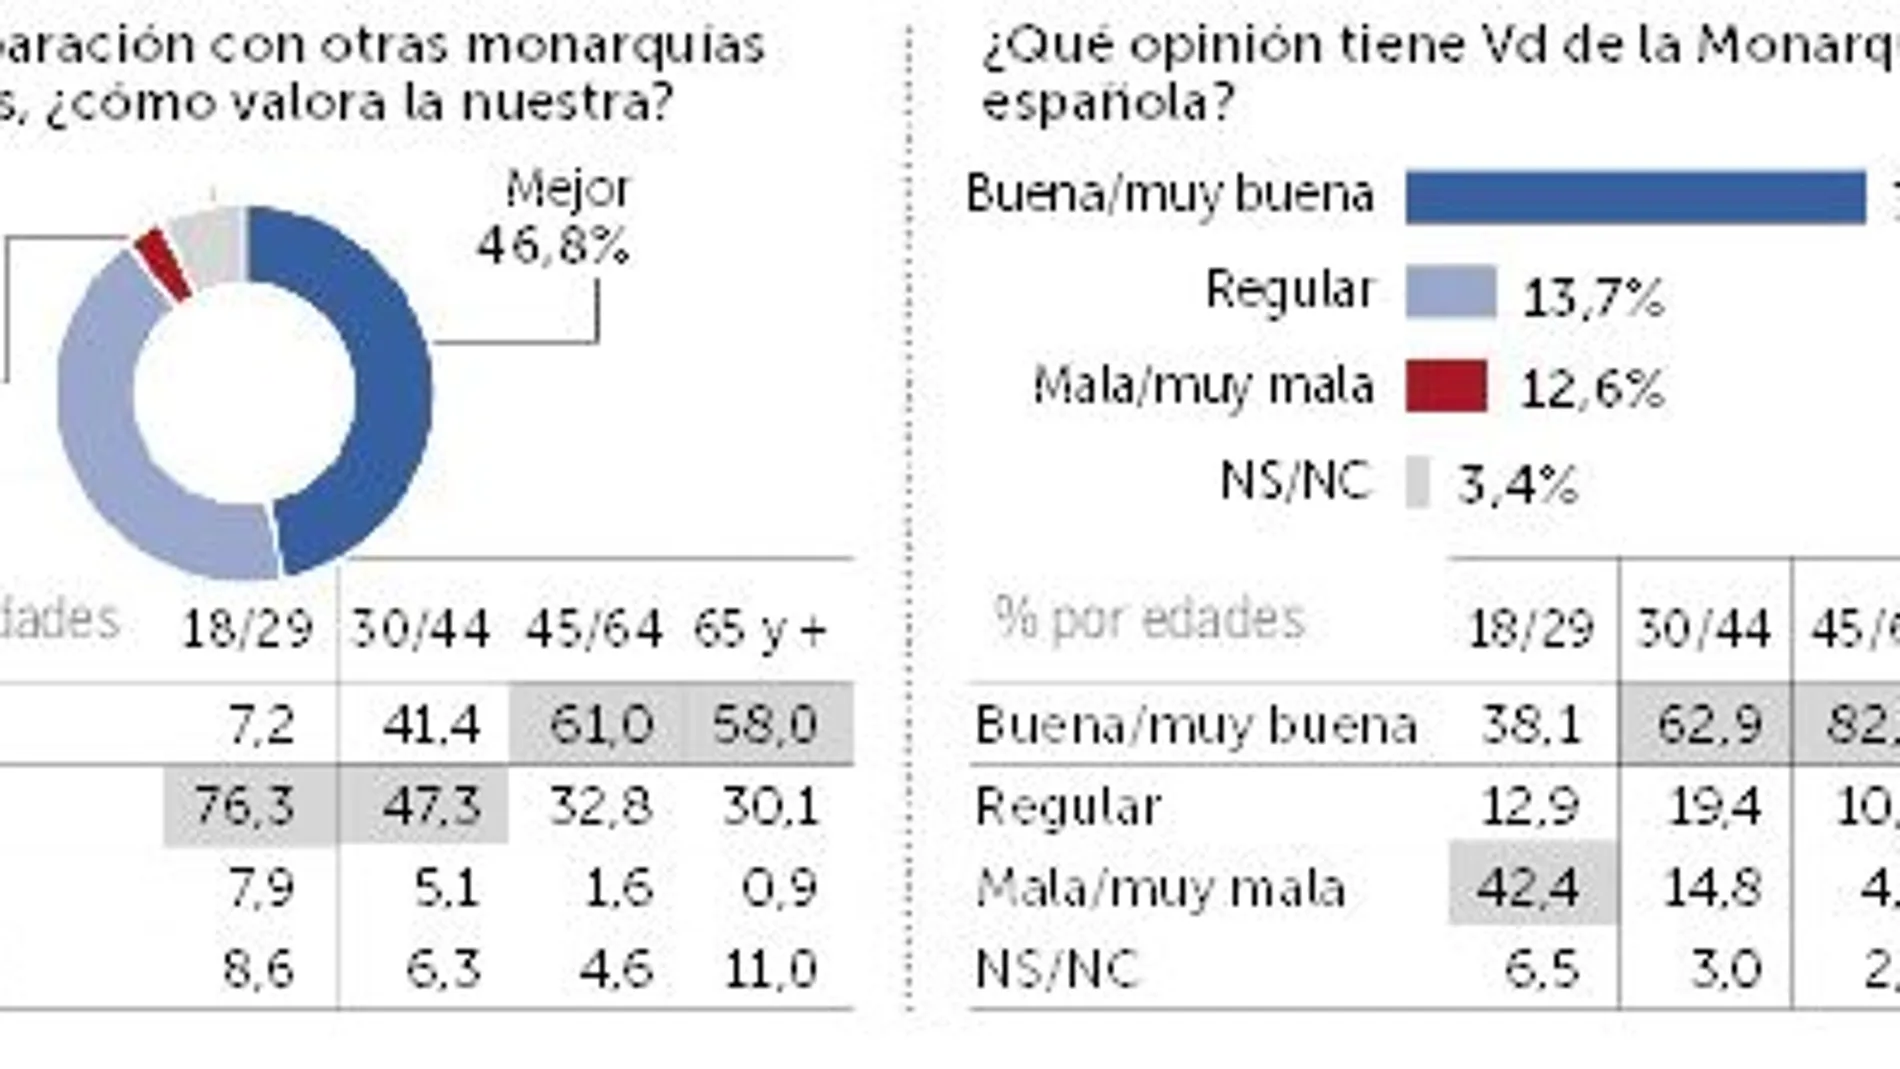 Más del 60% de los españoles rechaza que España sea una república